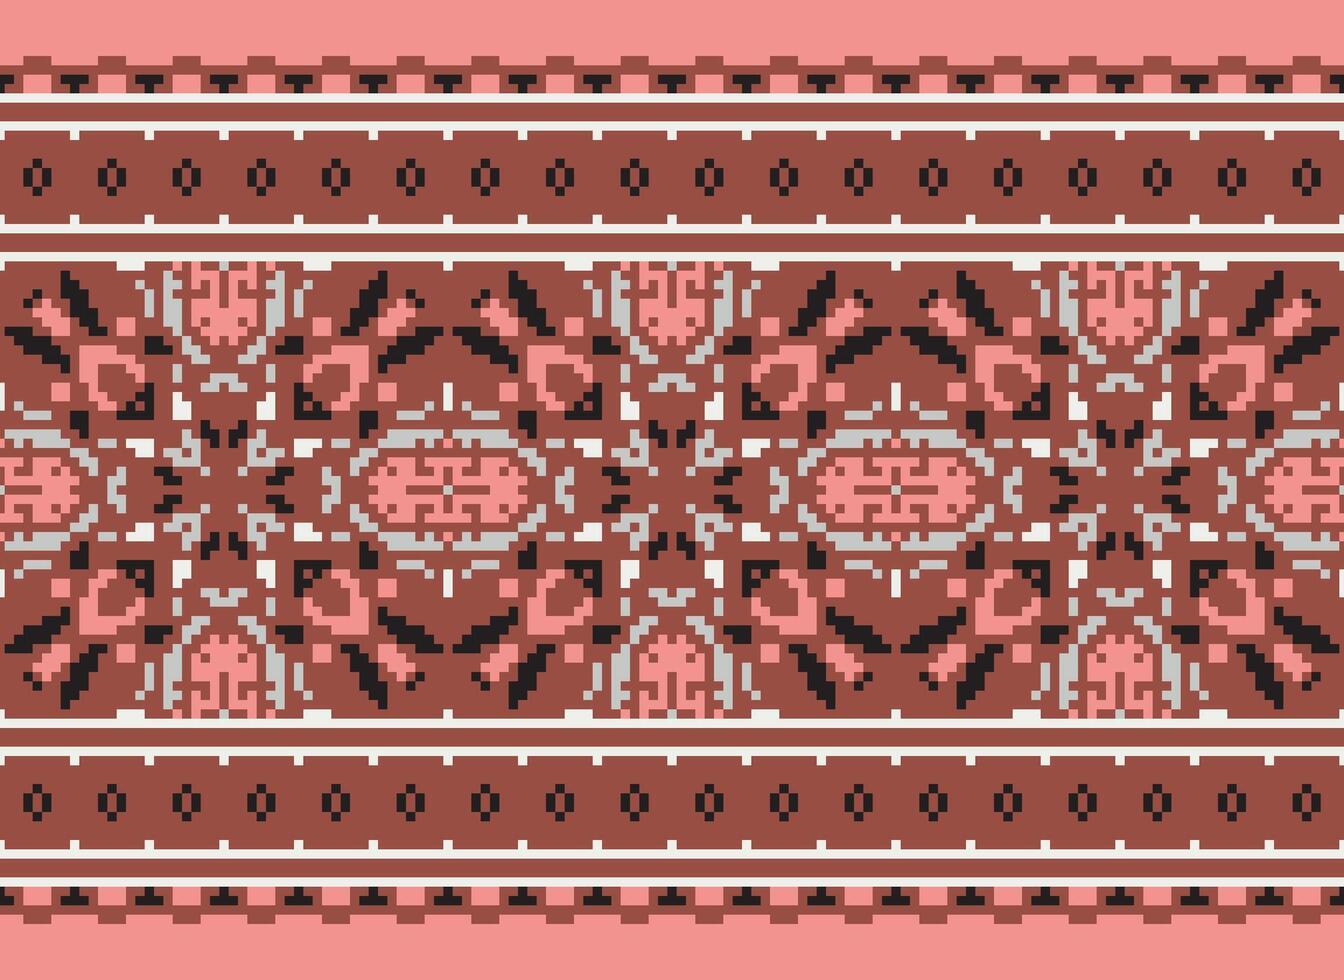 américain ethnique originaire de motif.traditionnel Navajo, aztèque, apache, sud-ouest et mexicain style en tissu pattern.abstract motifs conception des motifs pour tissu, vêtements, couverture, tapis, tissé, emballage, décoration vecteur